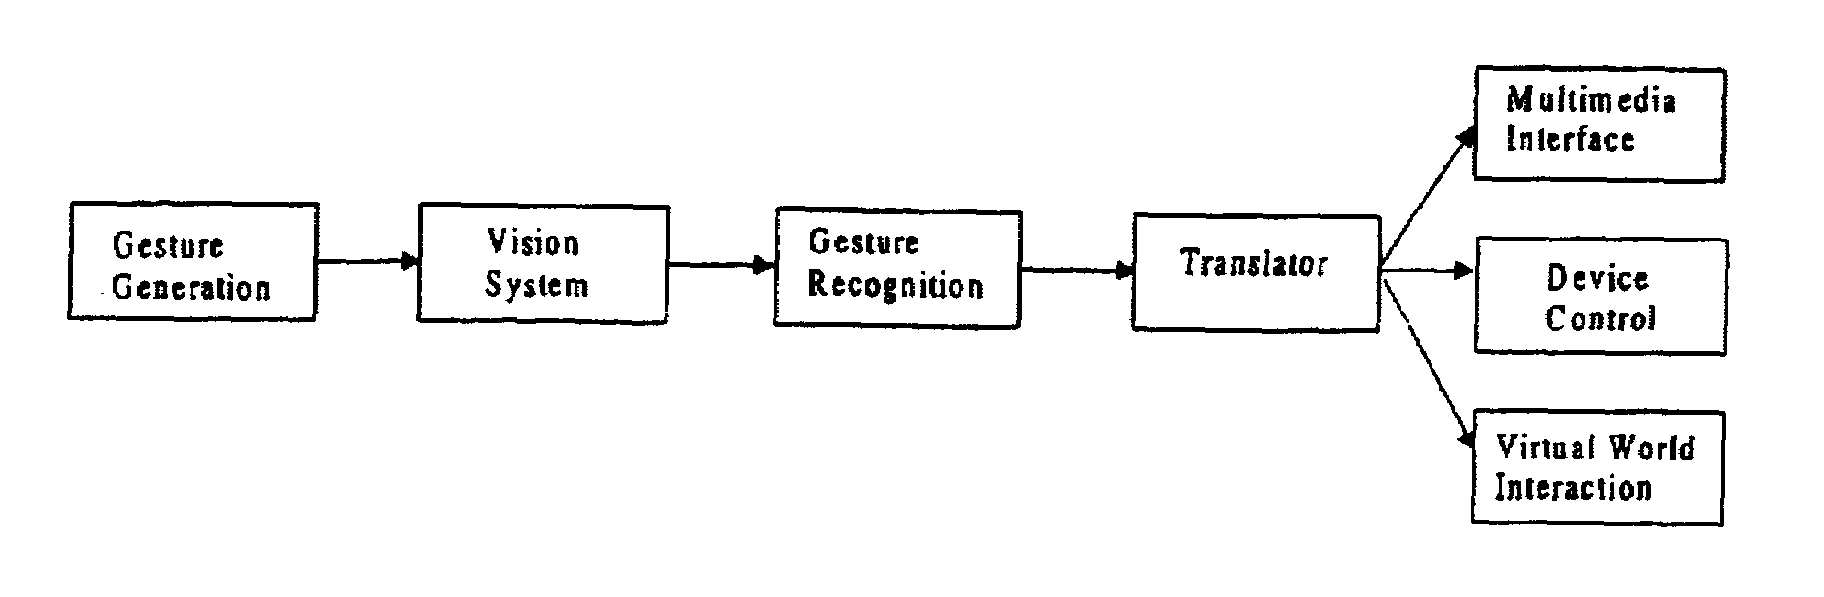 Behavior recognition system